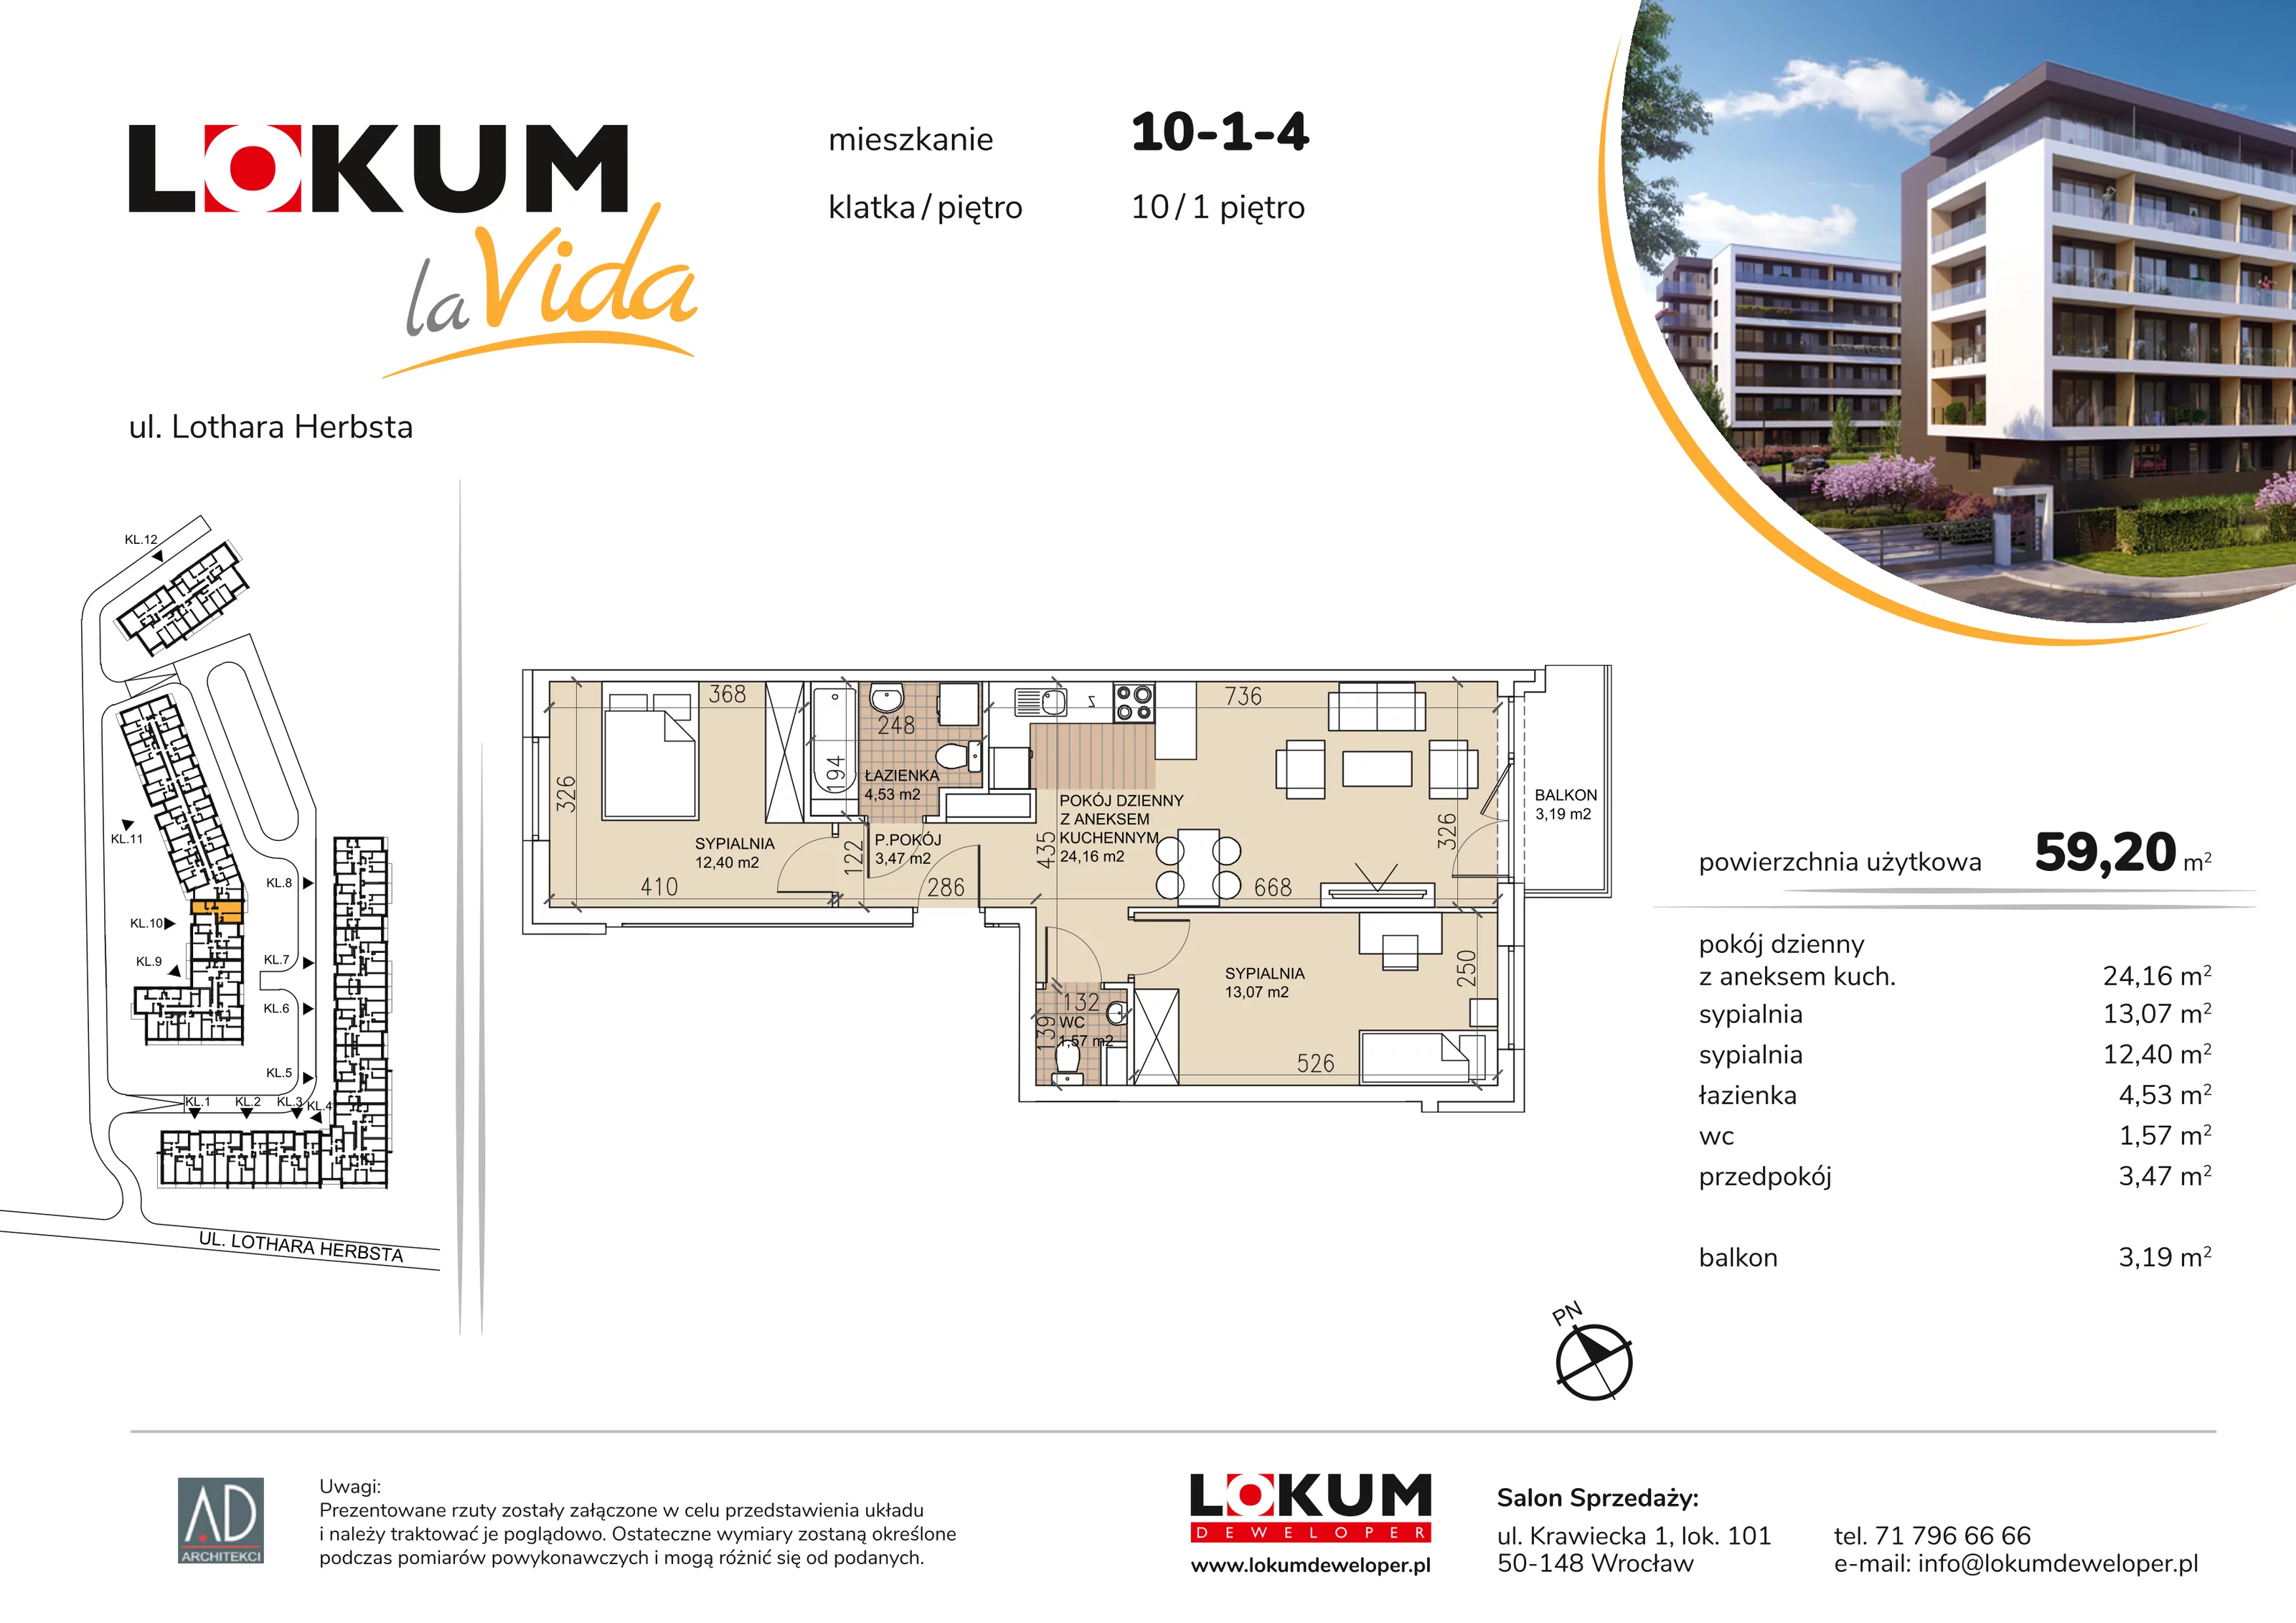 Mieszkanie 59,20 m², piętro 1, oferta nr 10-1-4, Lokum la Vida, Wrocław, Sołtysowice, ul. Lothara Herbsta